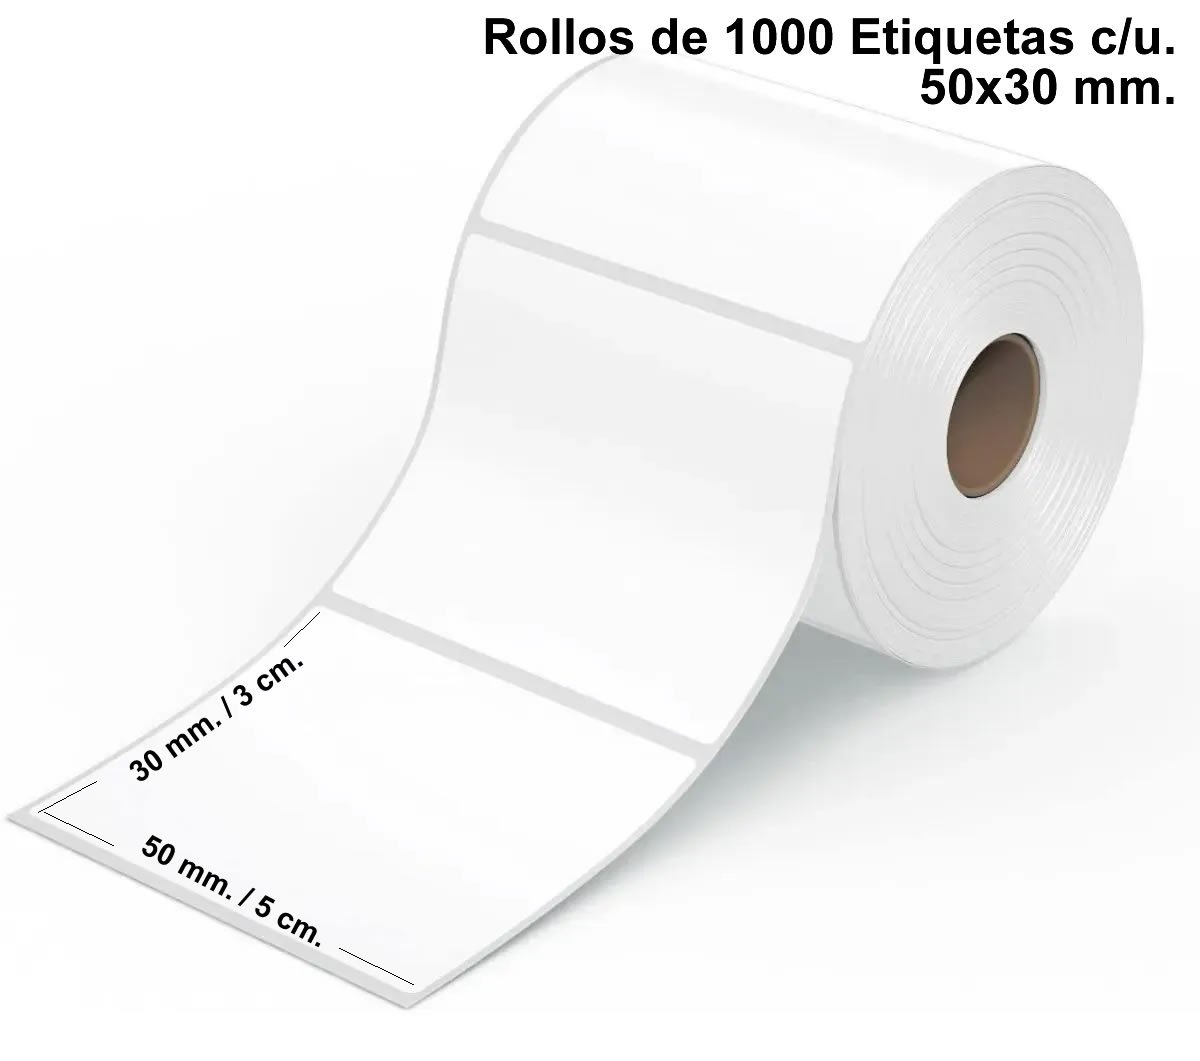 Rollo de EtiquetaTermica 50x30 mm. 1000 etiquetas por rollo